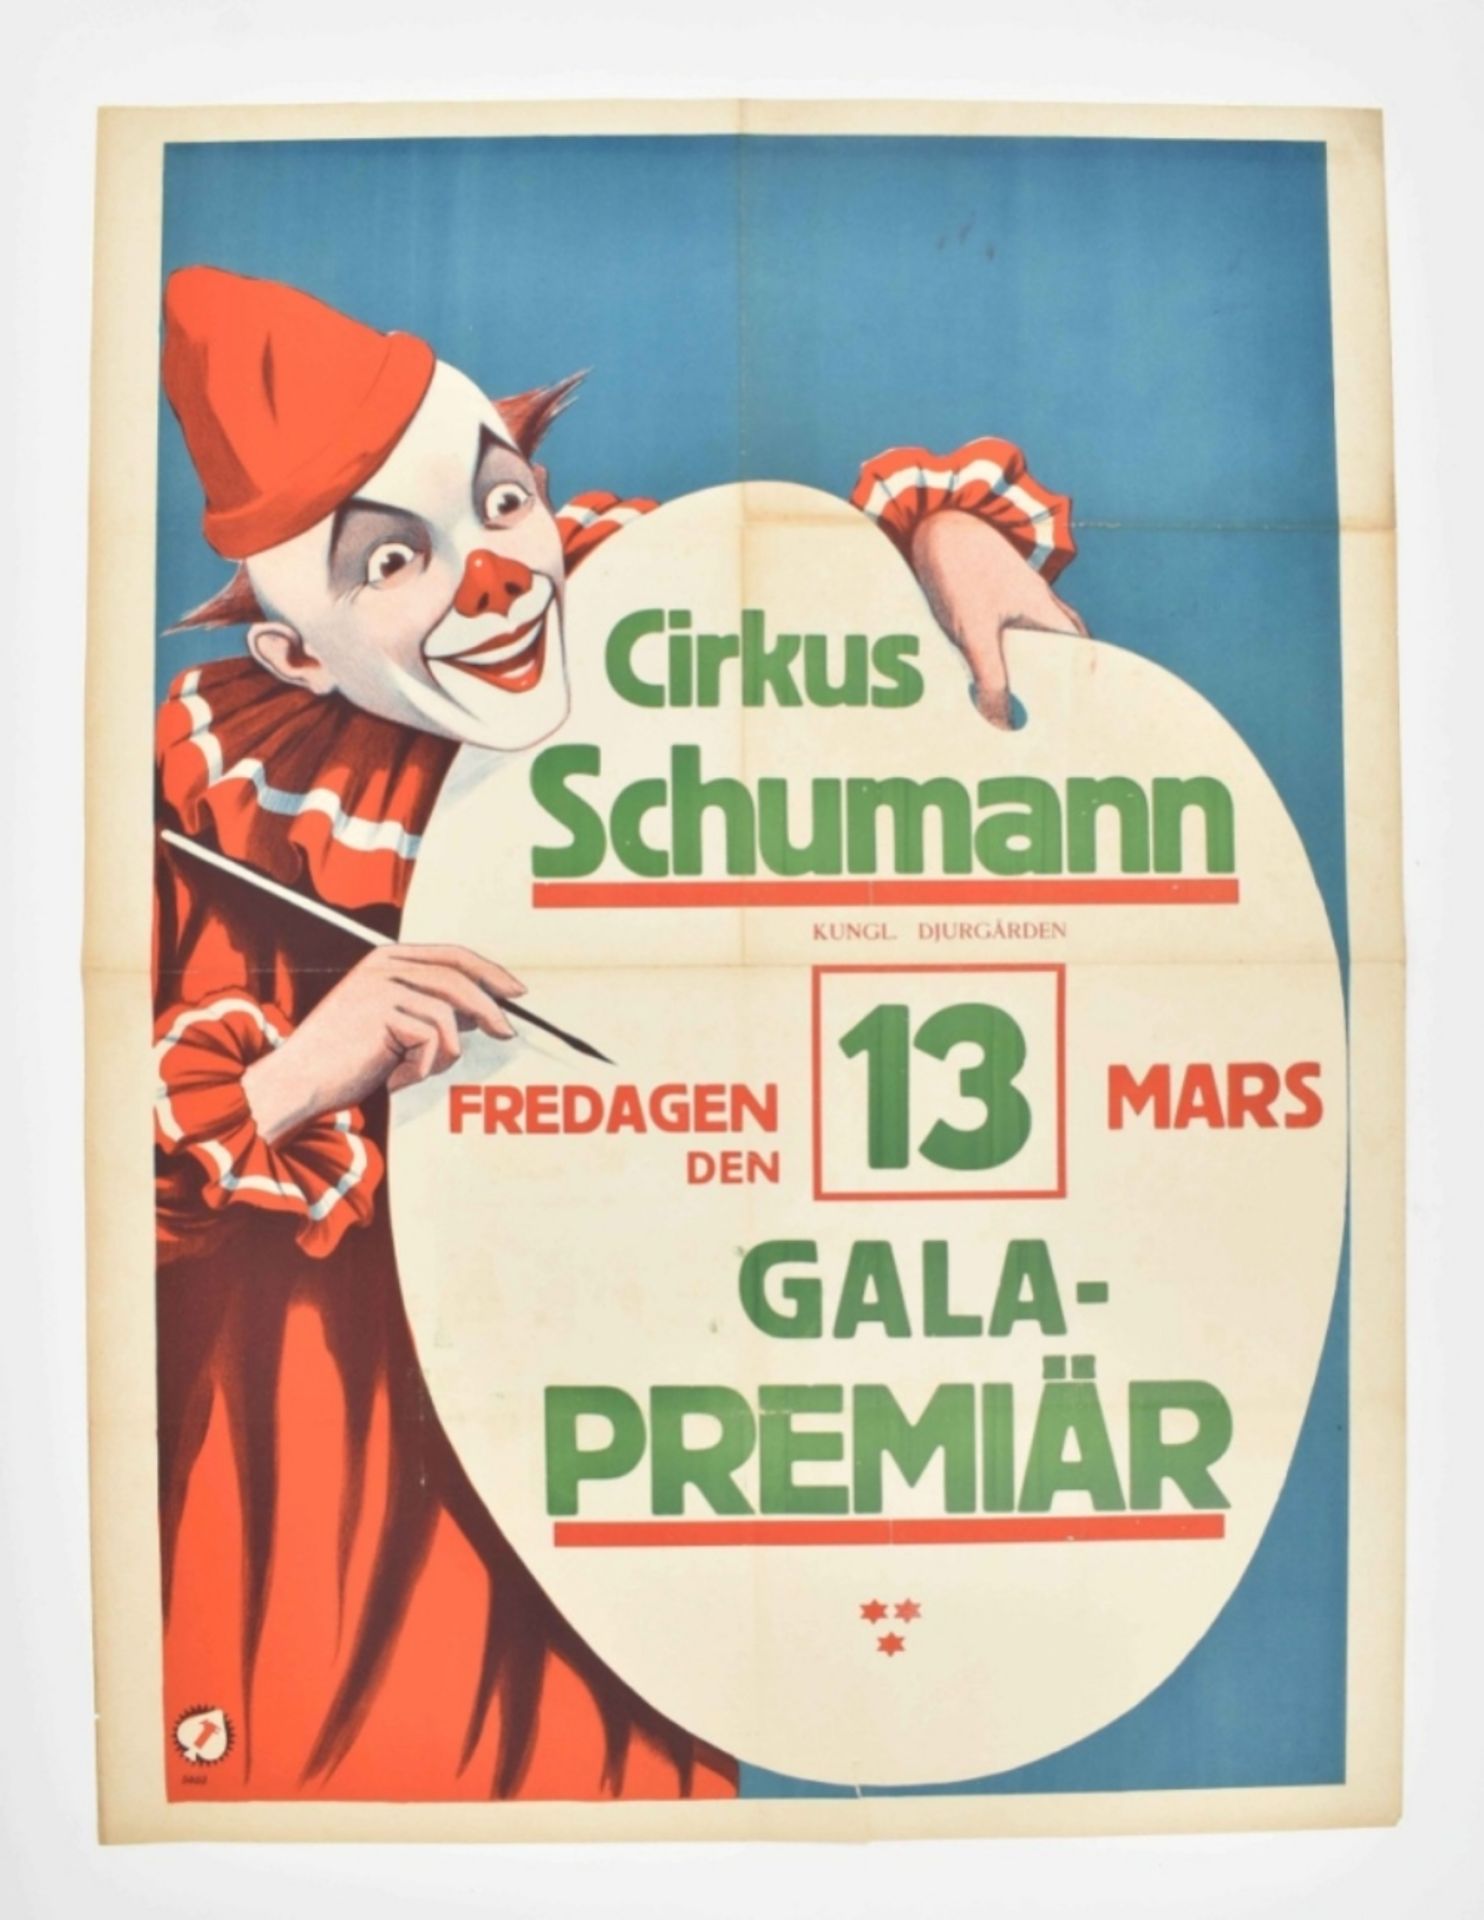 [Schumann] Cirkus Schumann Gala-Premiär - Image 6 of 6